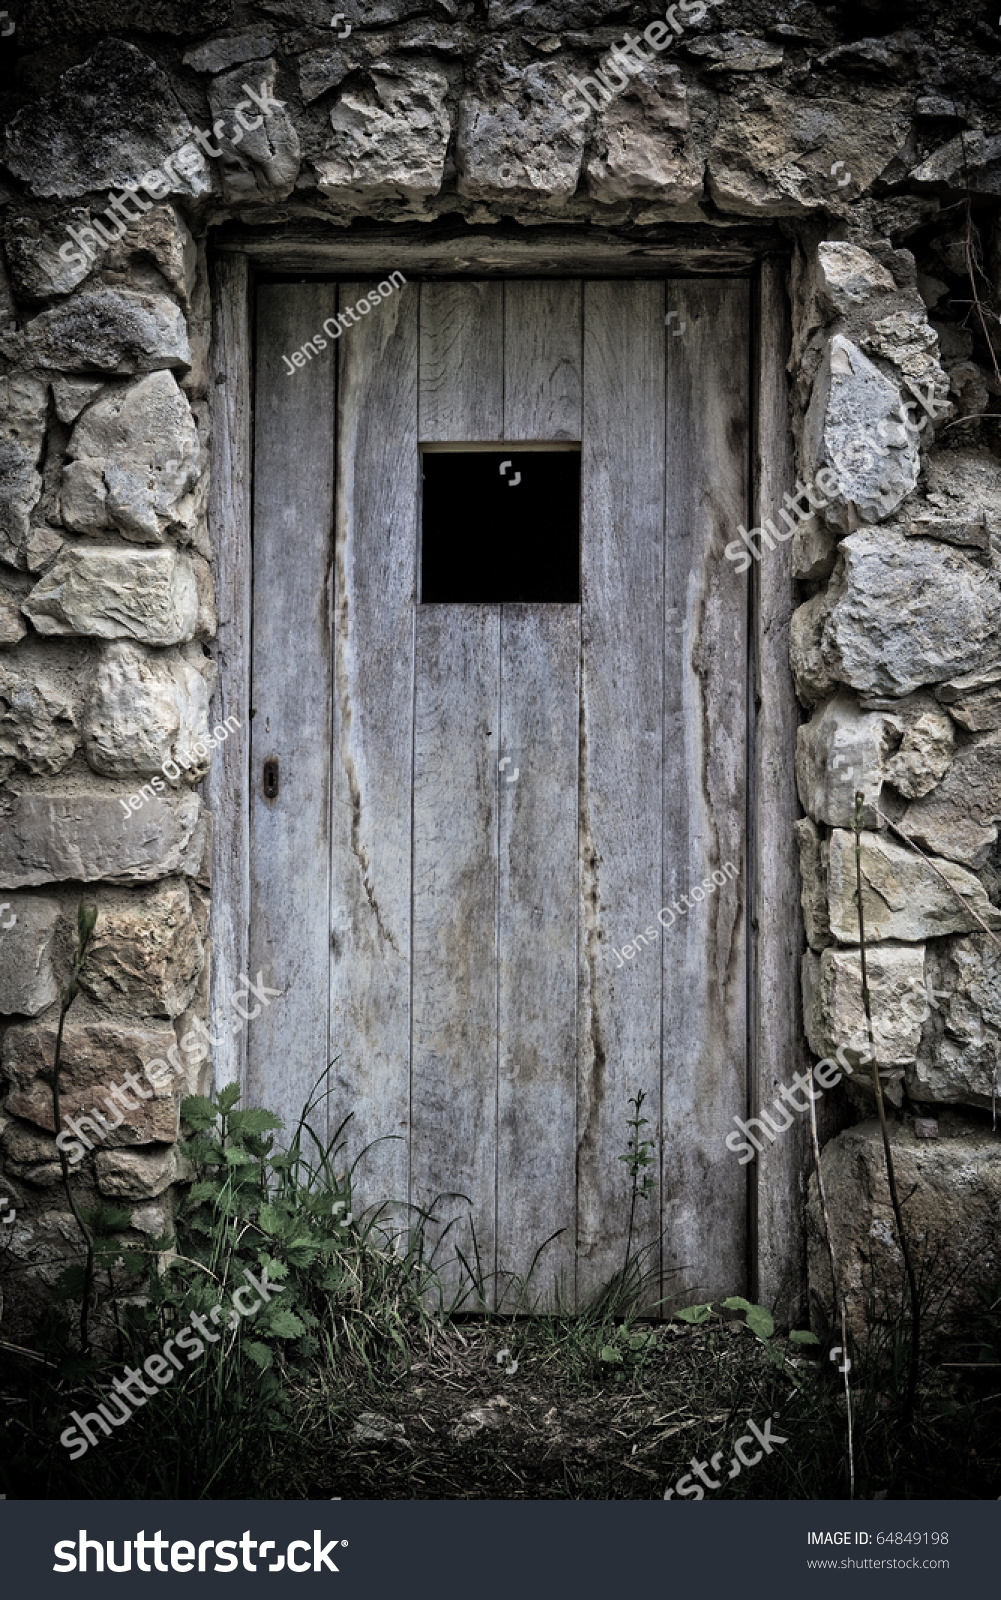 Old Door Castle Ruin Stock Photo 64849198 - Shutterstock